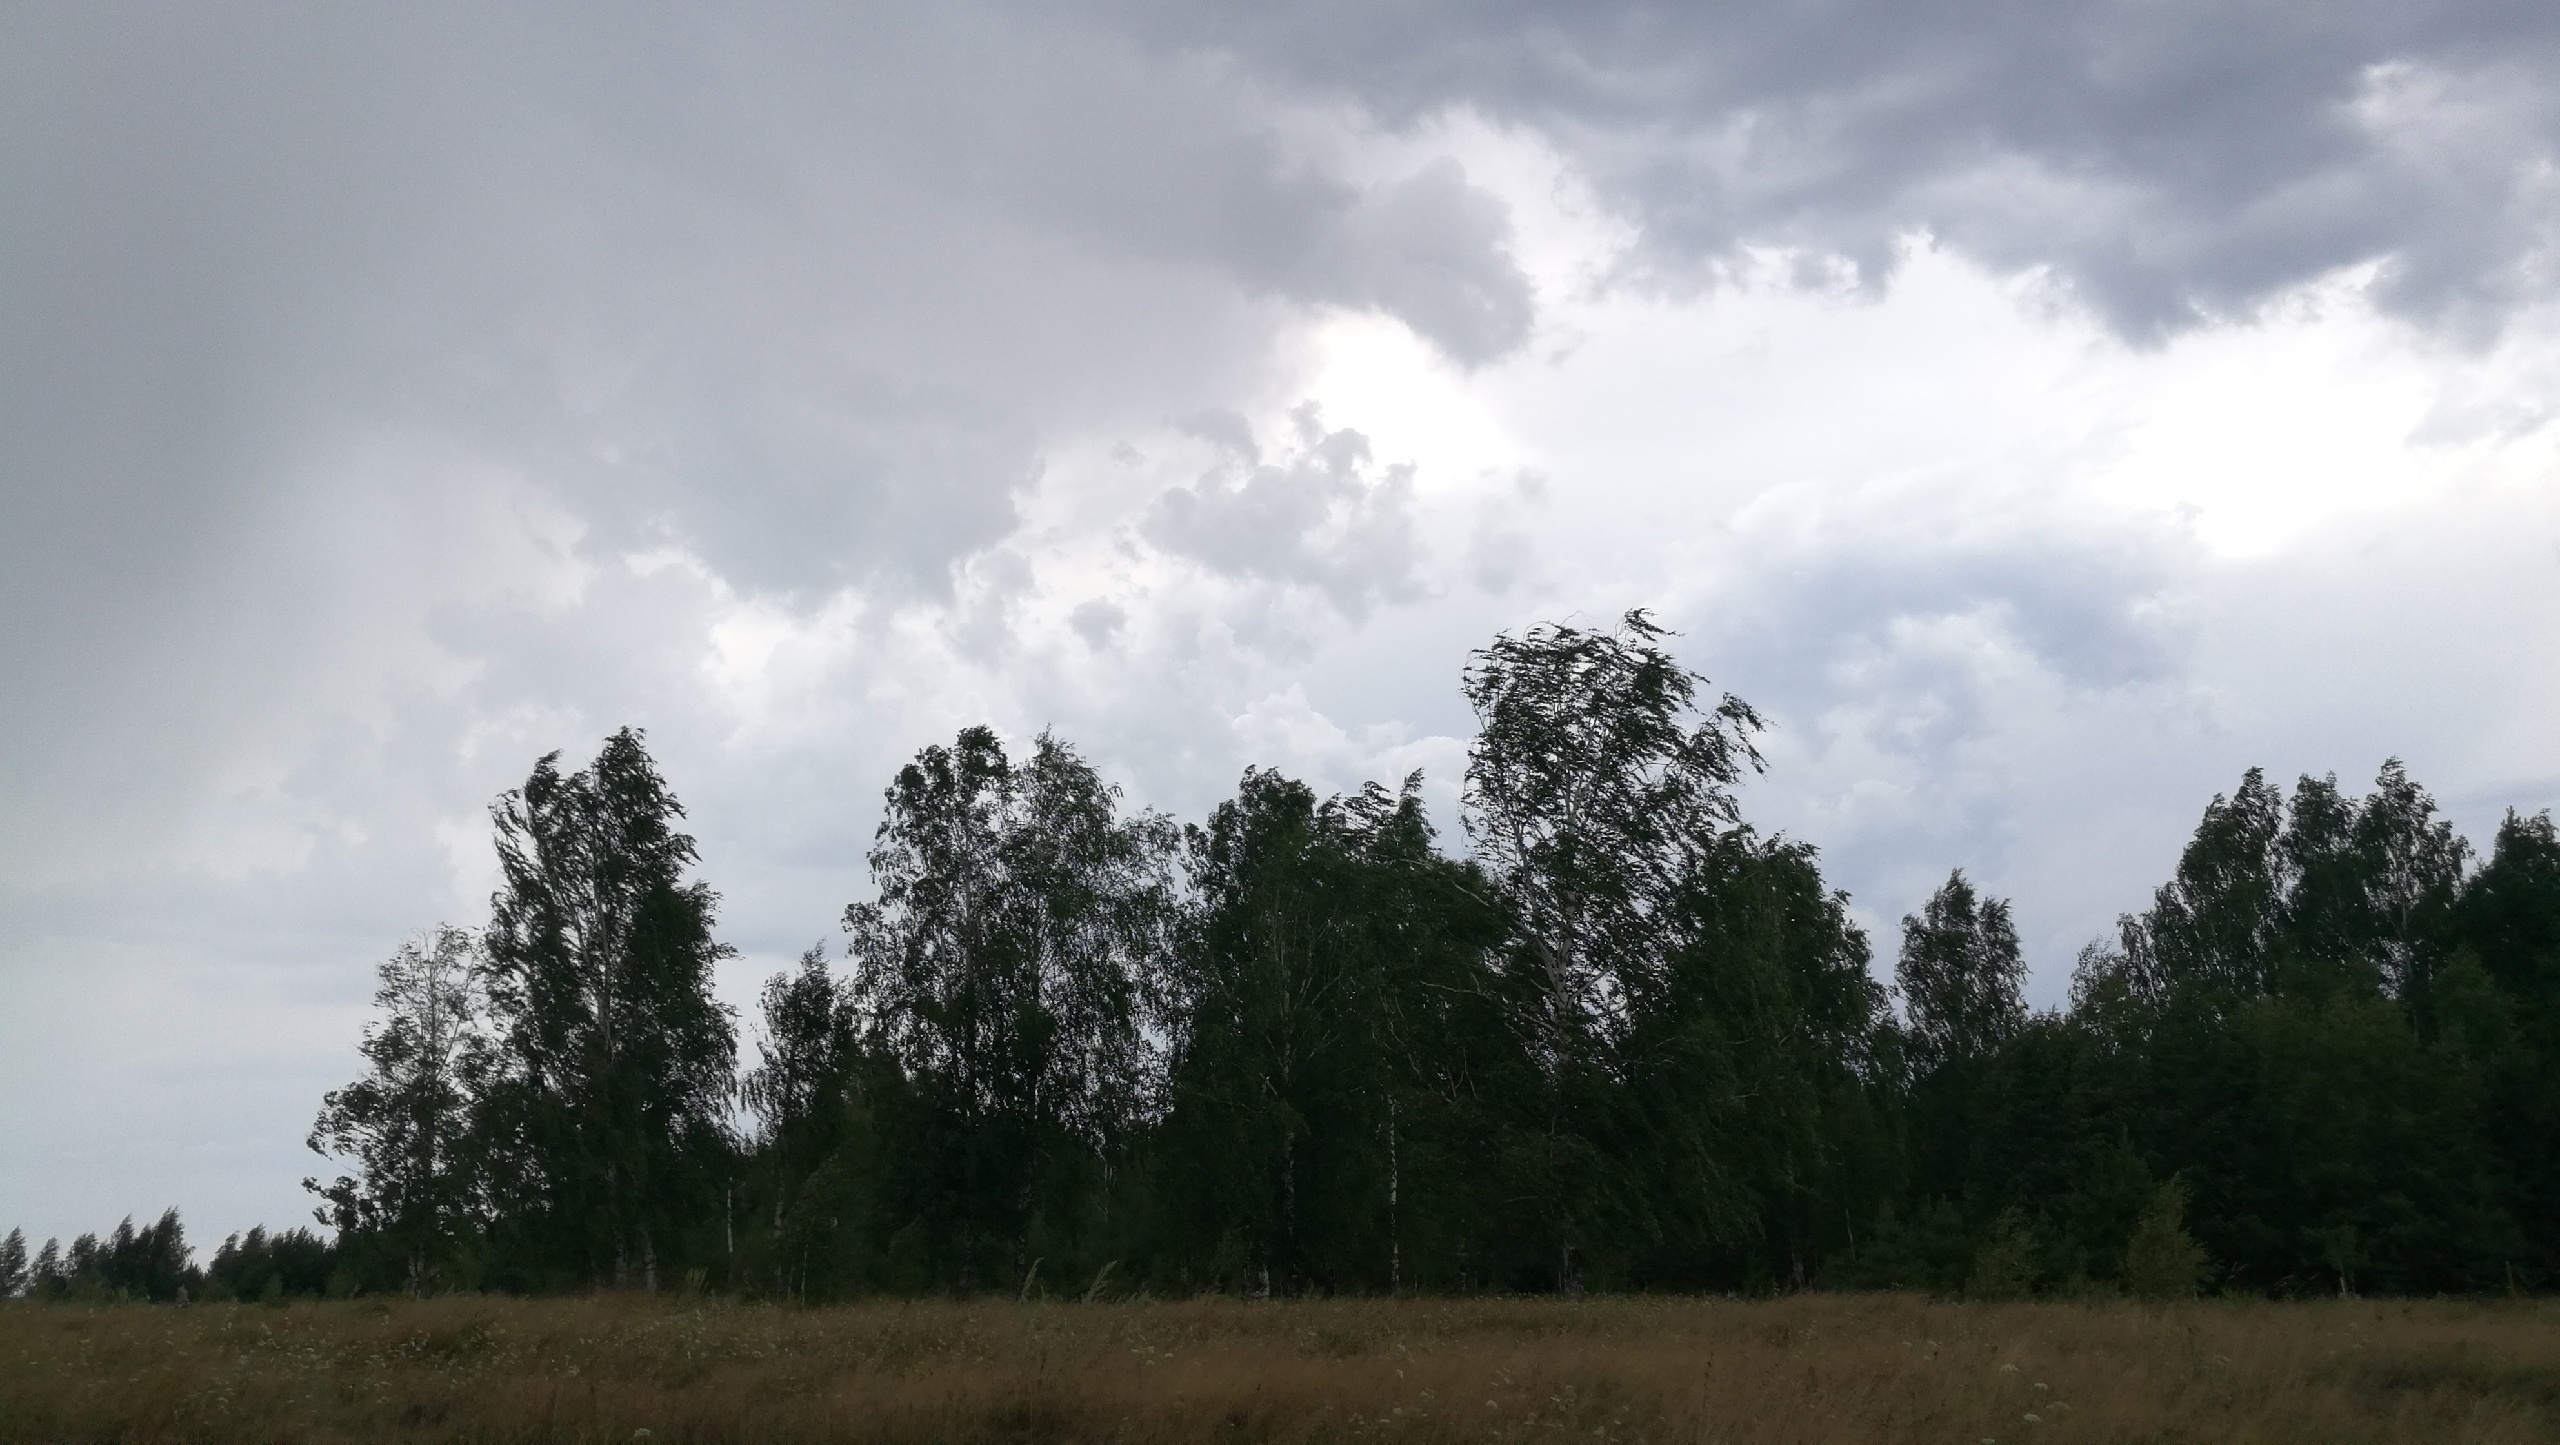 Дожди и грозы не покинут Нижегородскую область: прогноз погоды на завтра